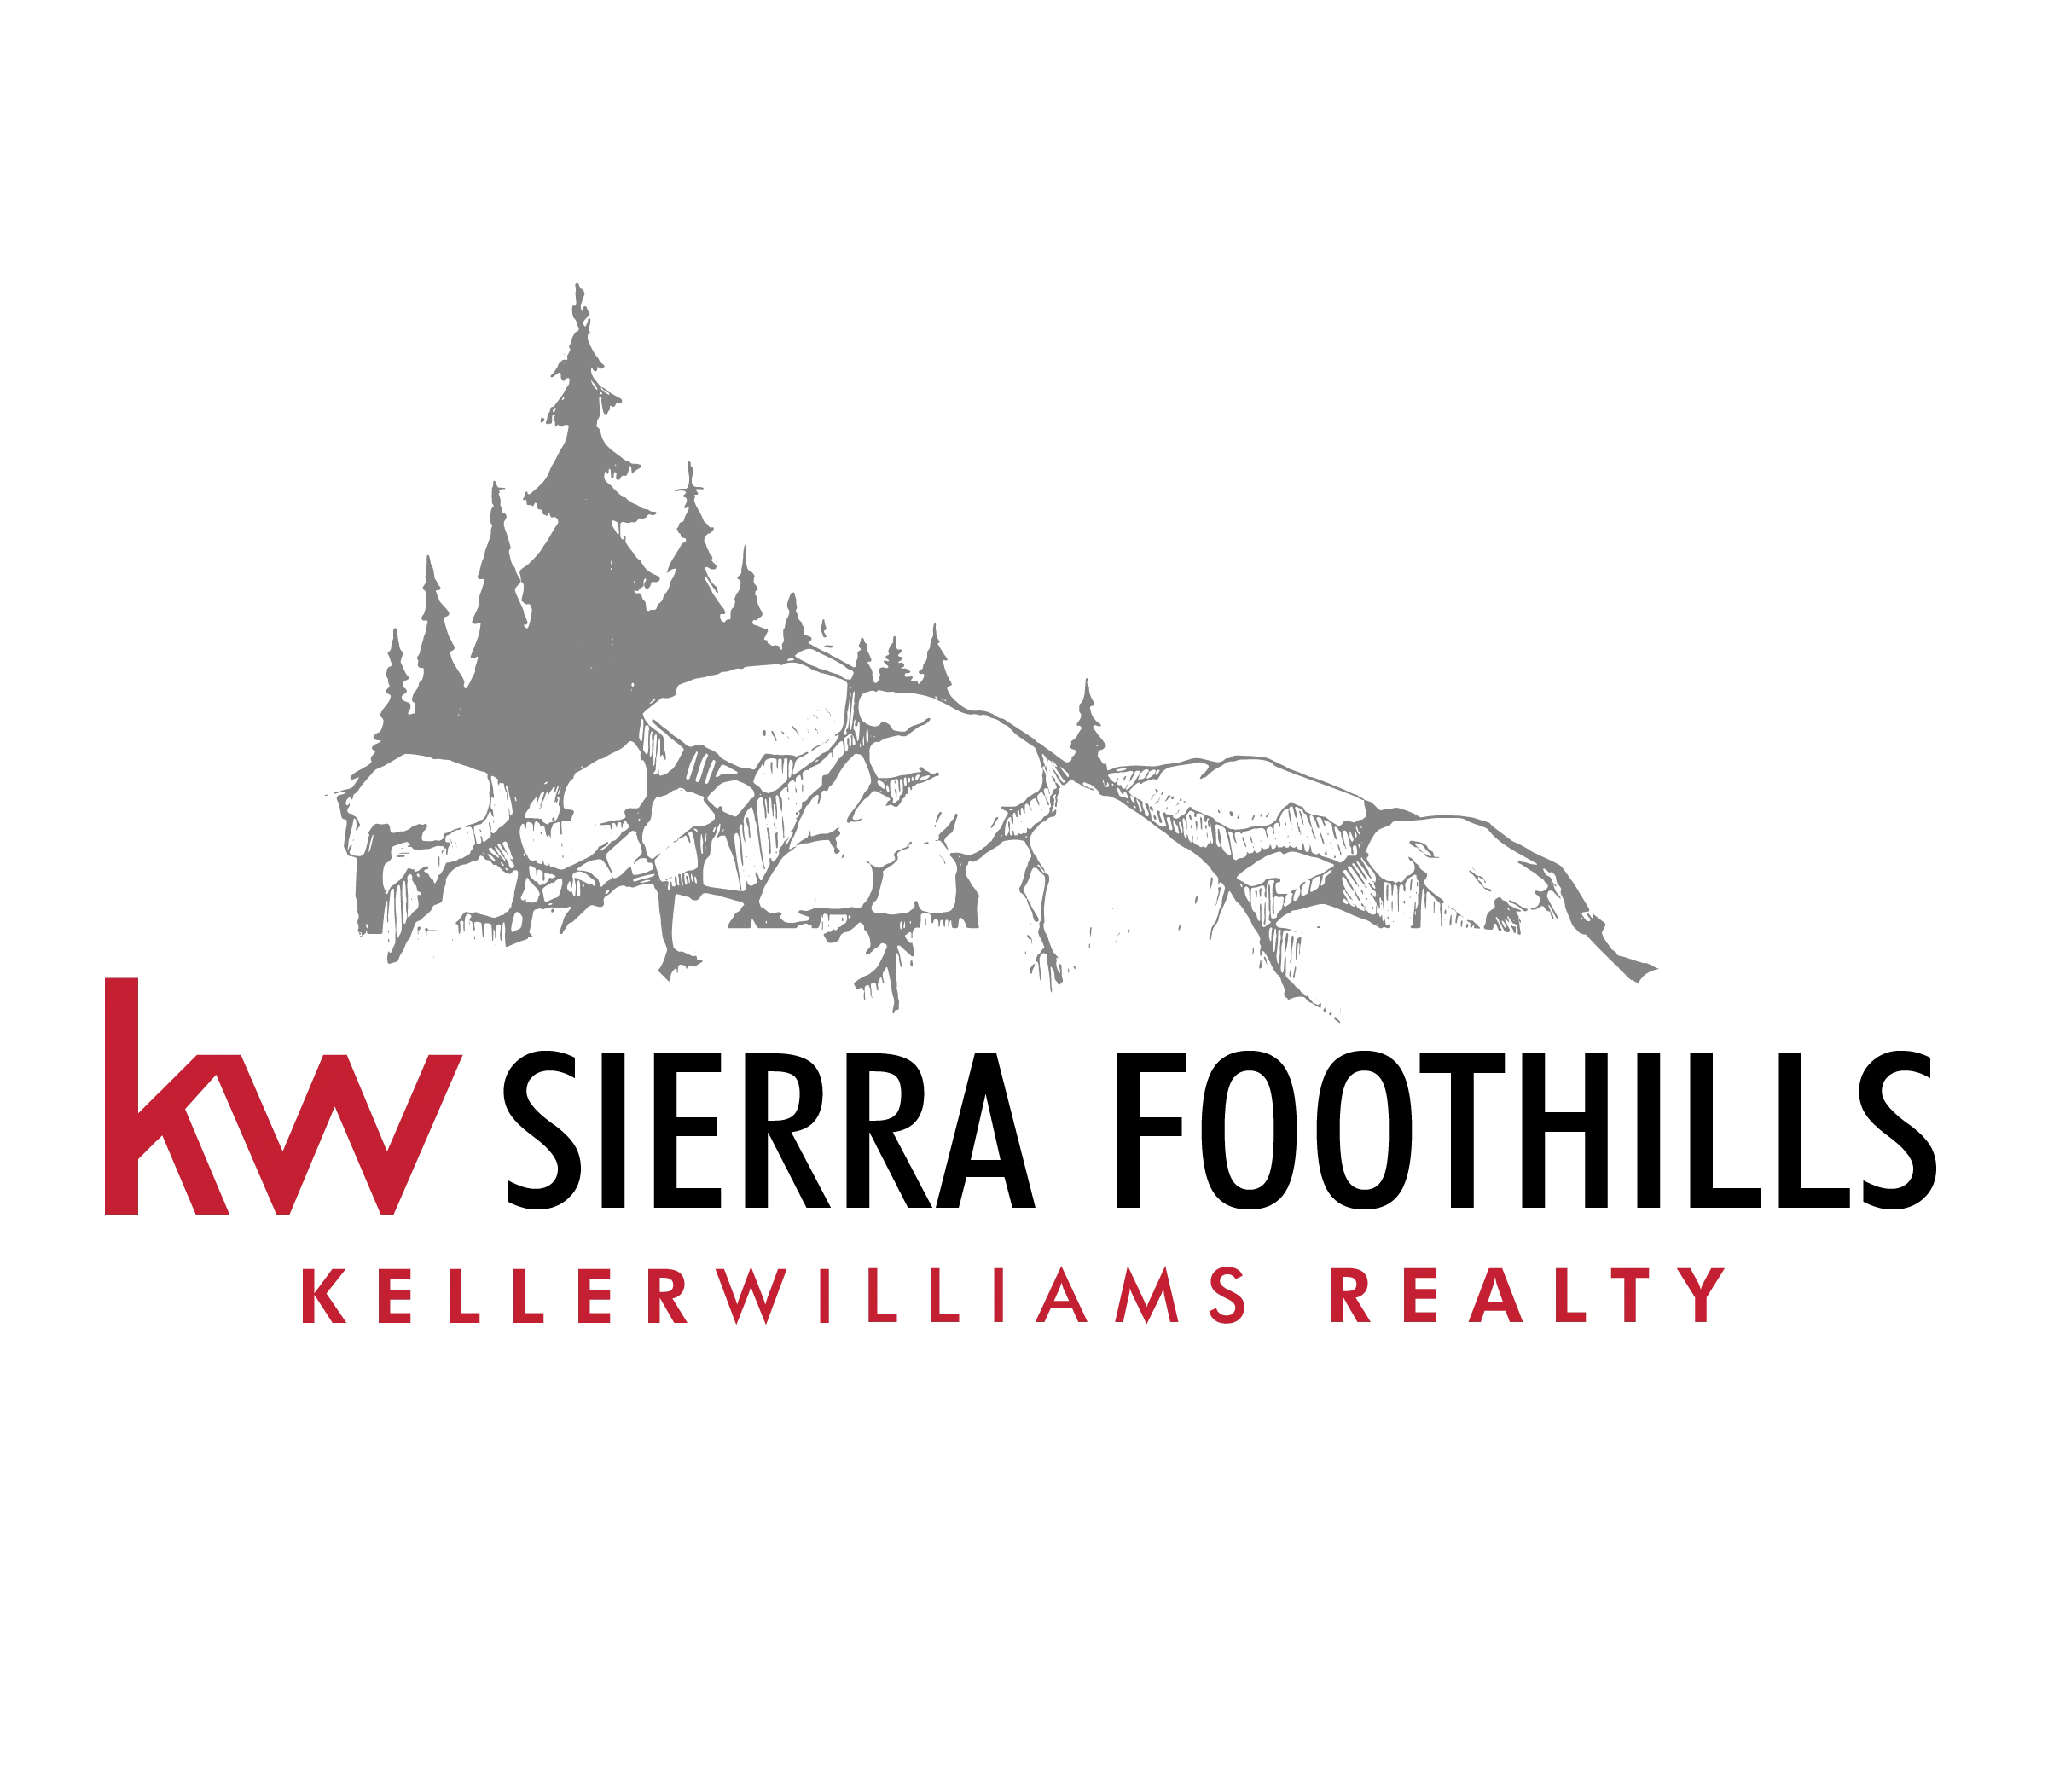 Keller Williams Market Center Logo